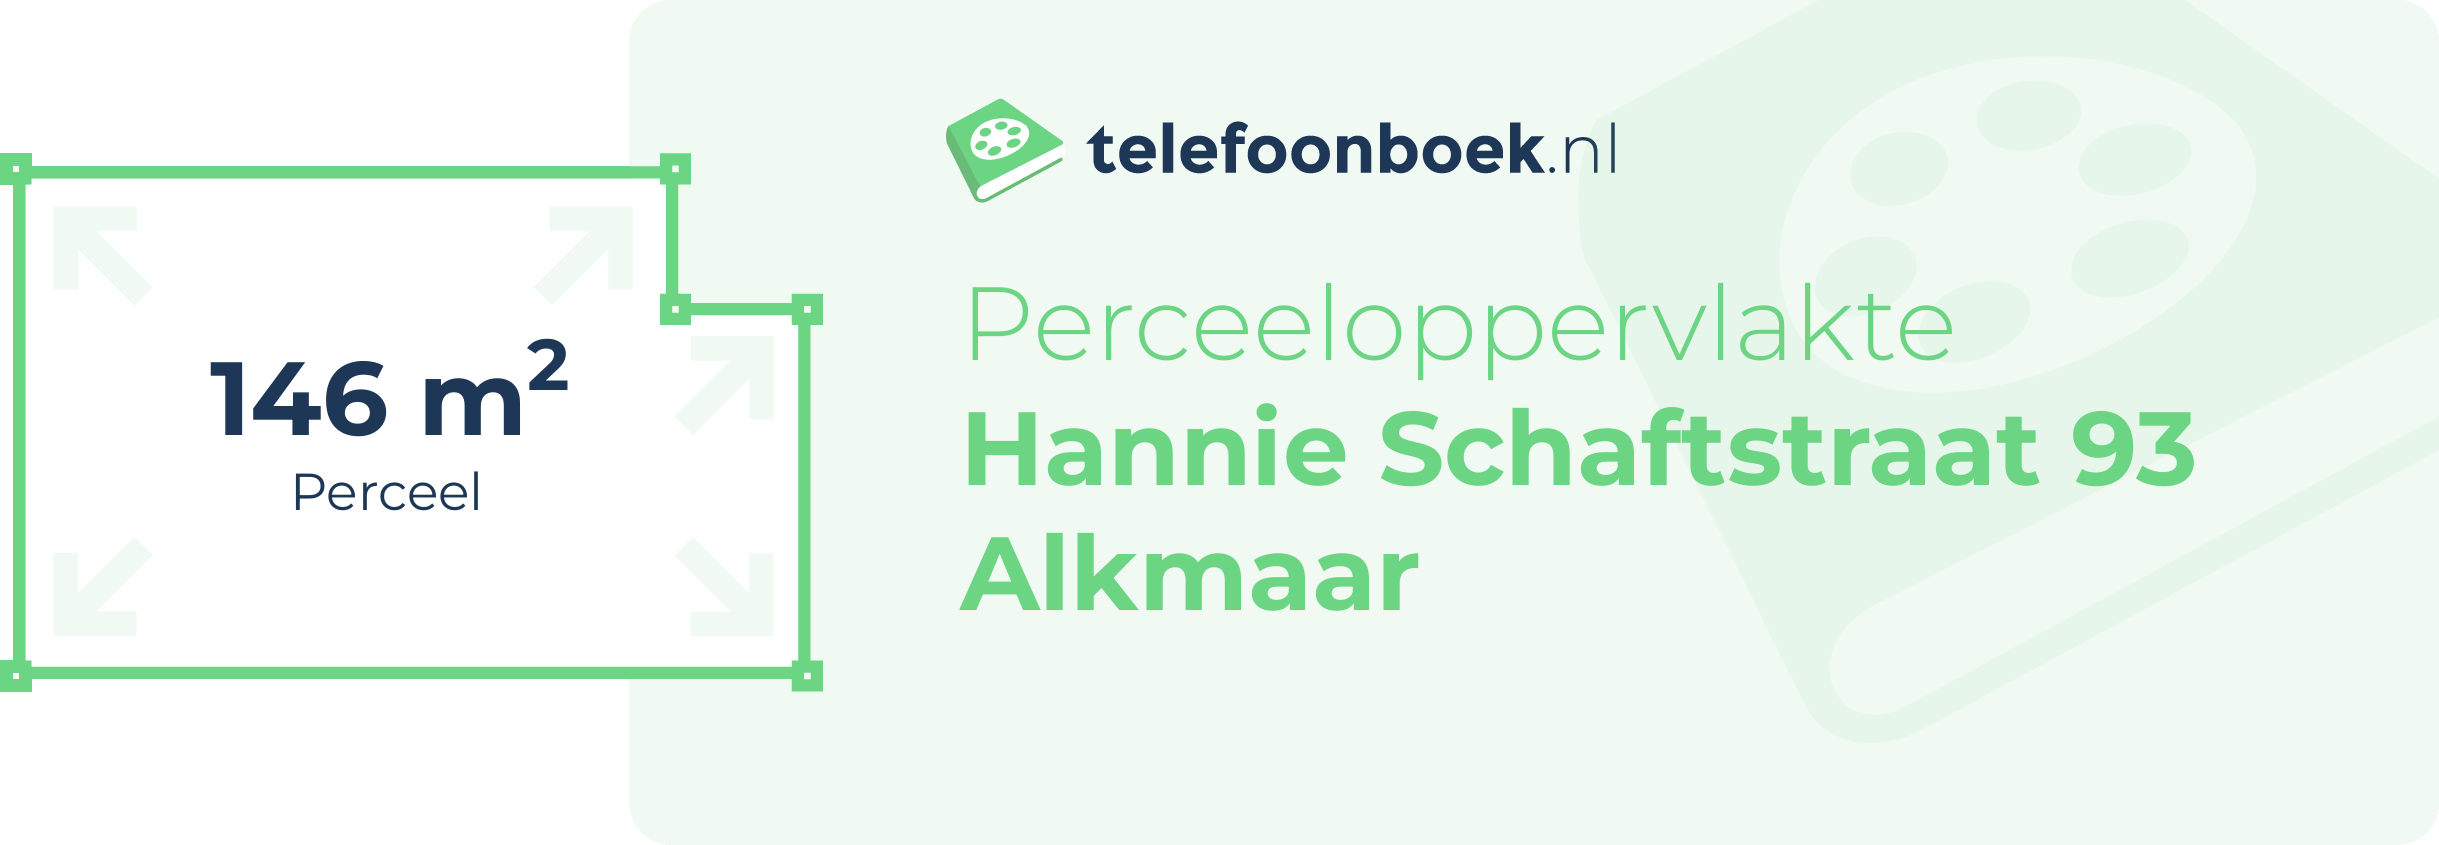 Perceeloppervlakte Hannie Schaftstraat 93 Alkmaar